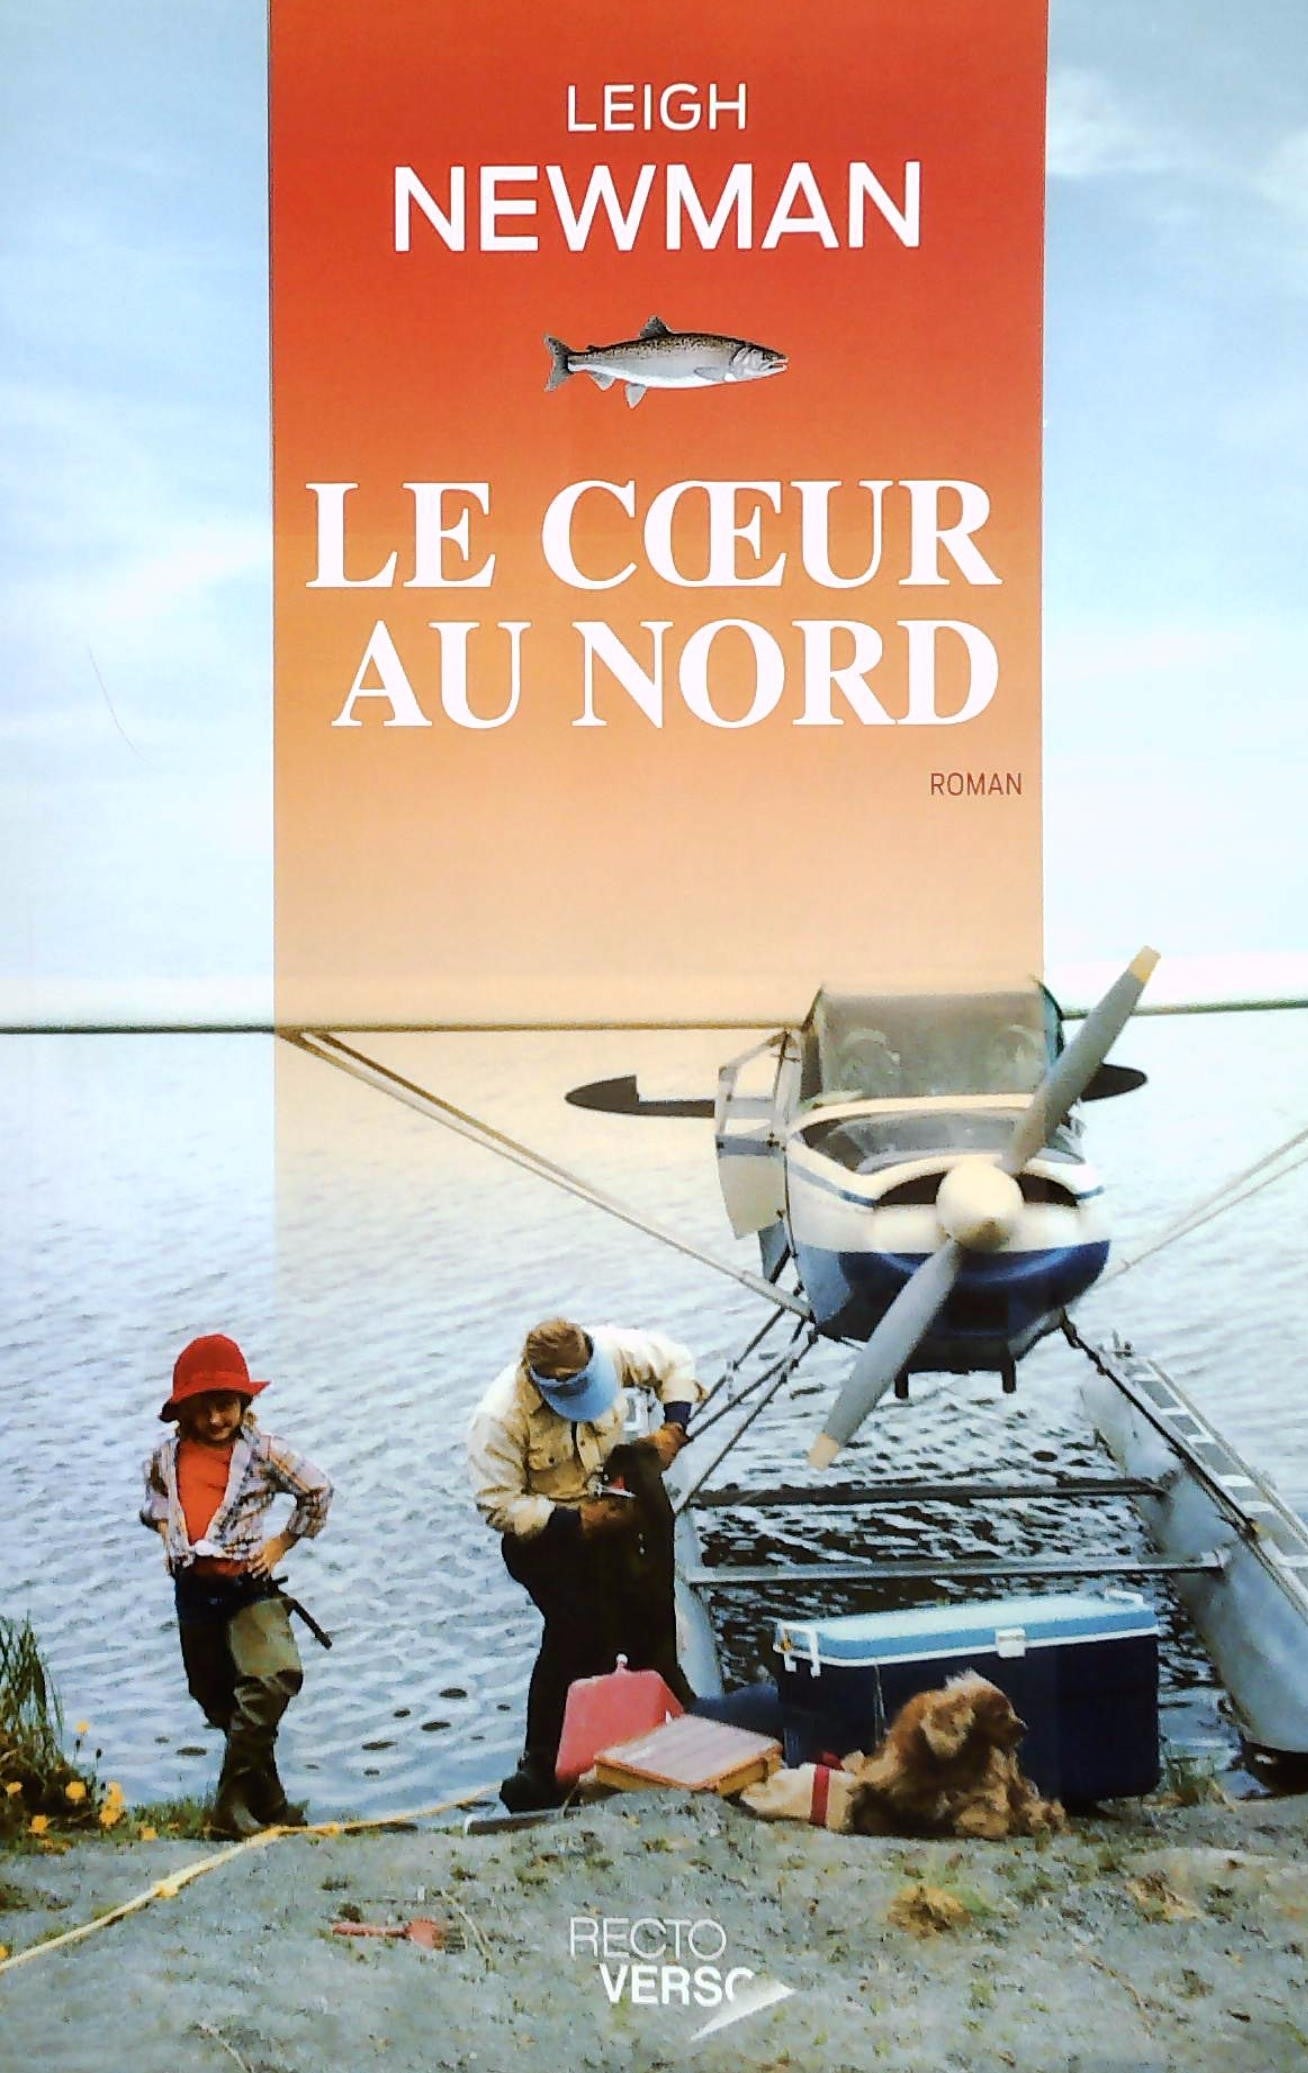 Livre ISBN 2924259223 Le coeur au nord (Leigh Newman)